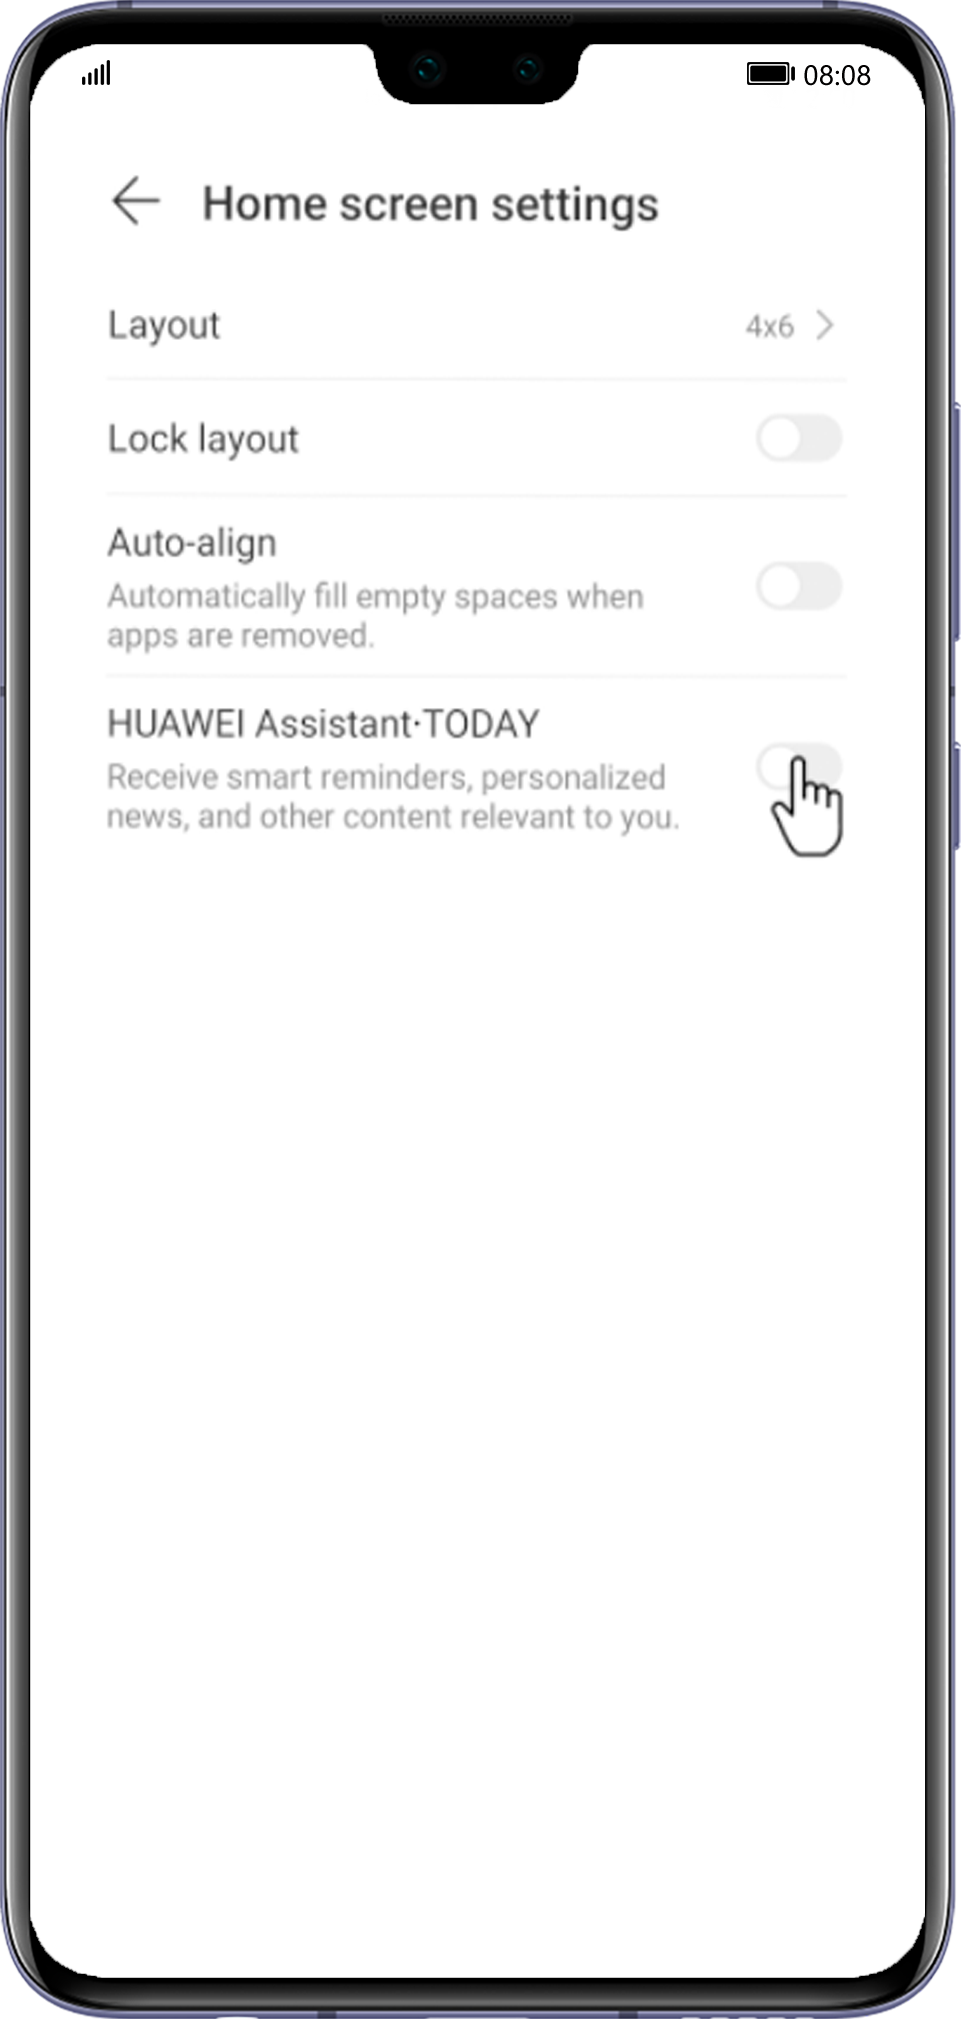 Хуавей ассистент. Смартфон Huawei Assistant. Крану Huawei Assistant·today. Как убрать Assistant today Huawei. Как отключить huawei экран